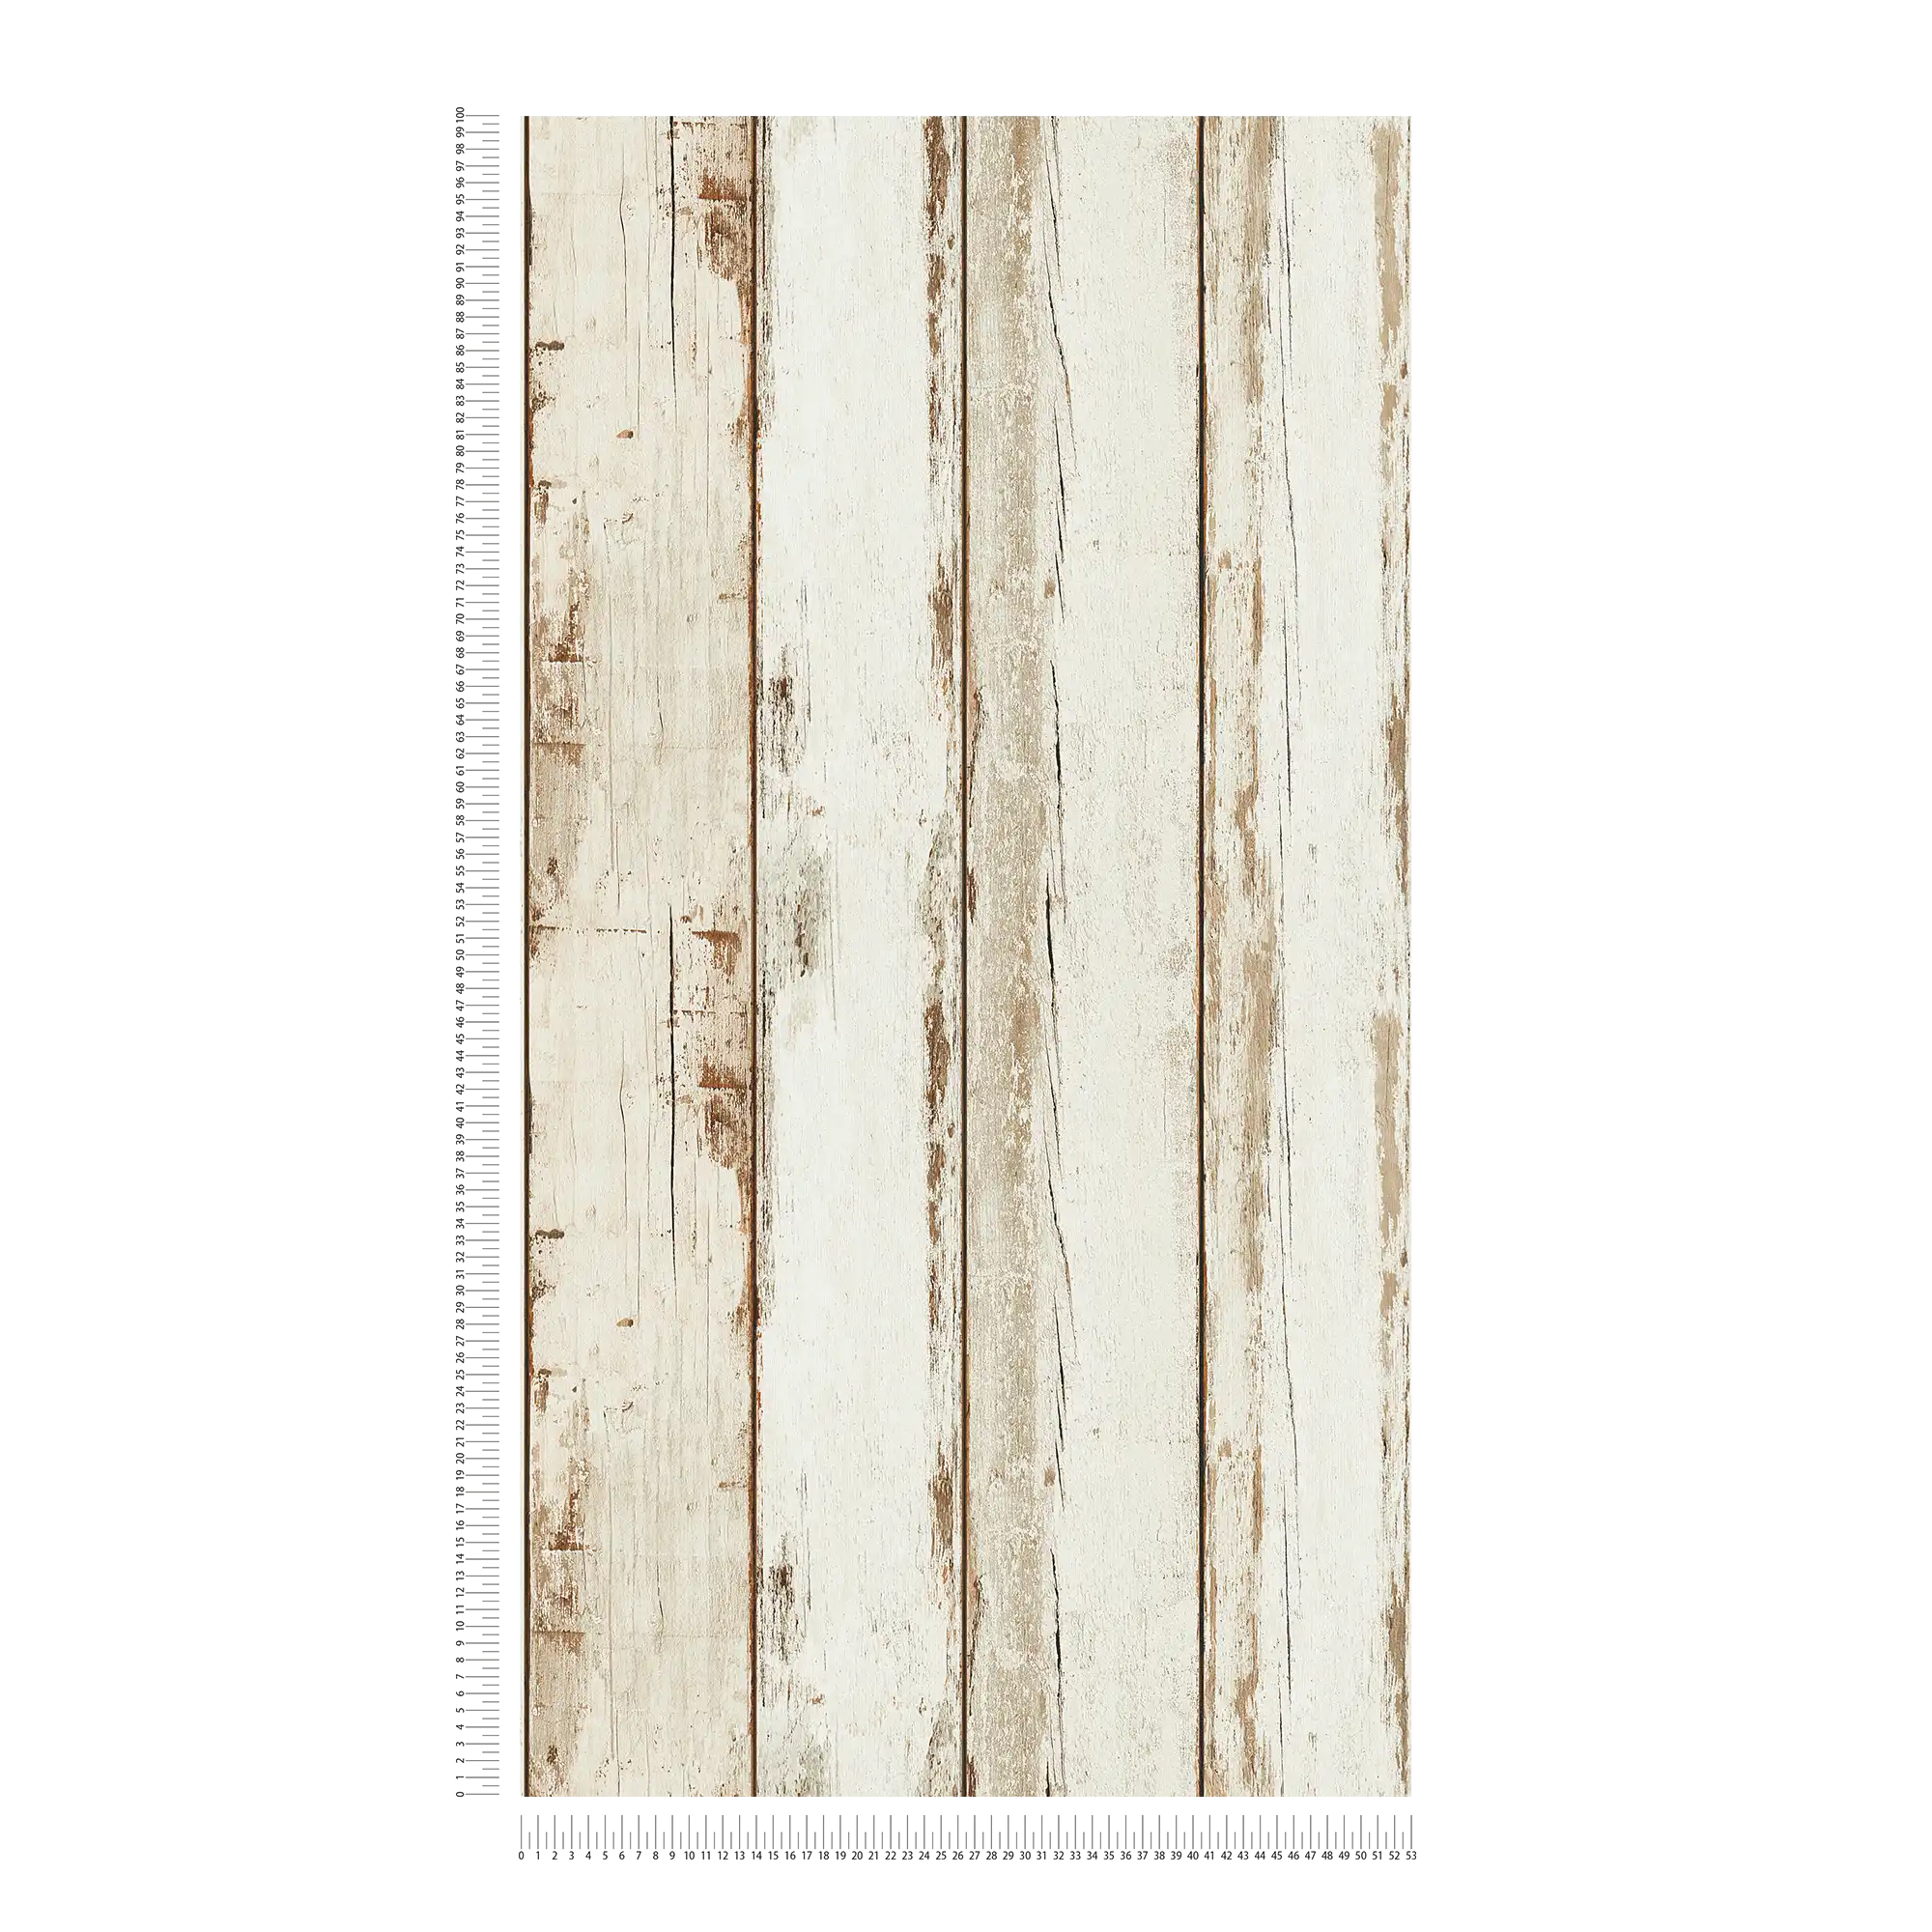             Papel pintado de madera vintage, aspecto usado, estilo rústico - crema, marrón
        